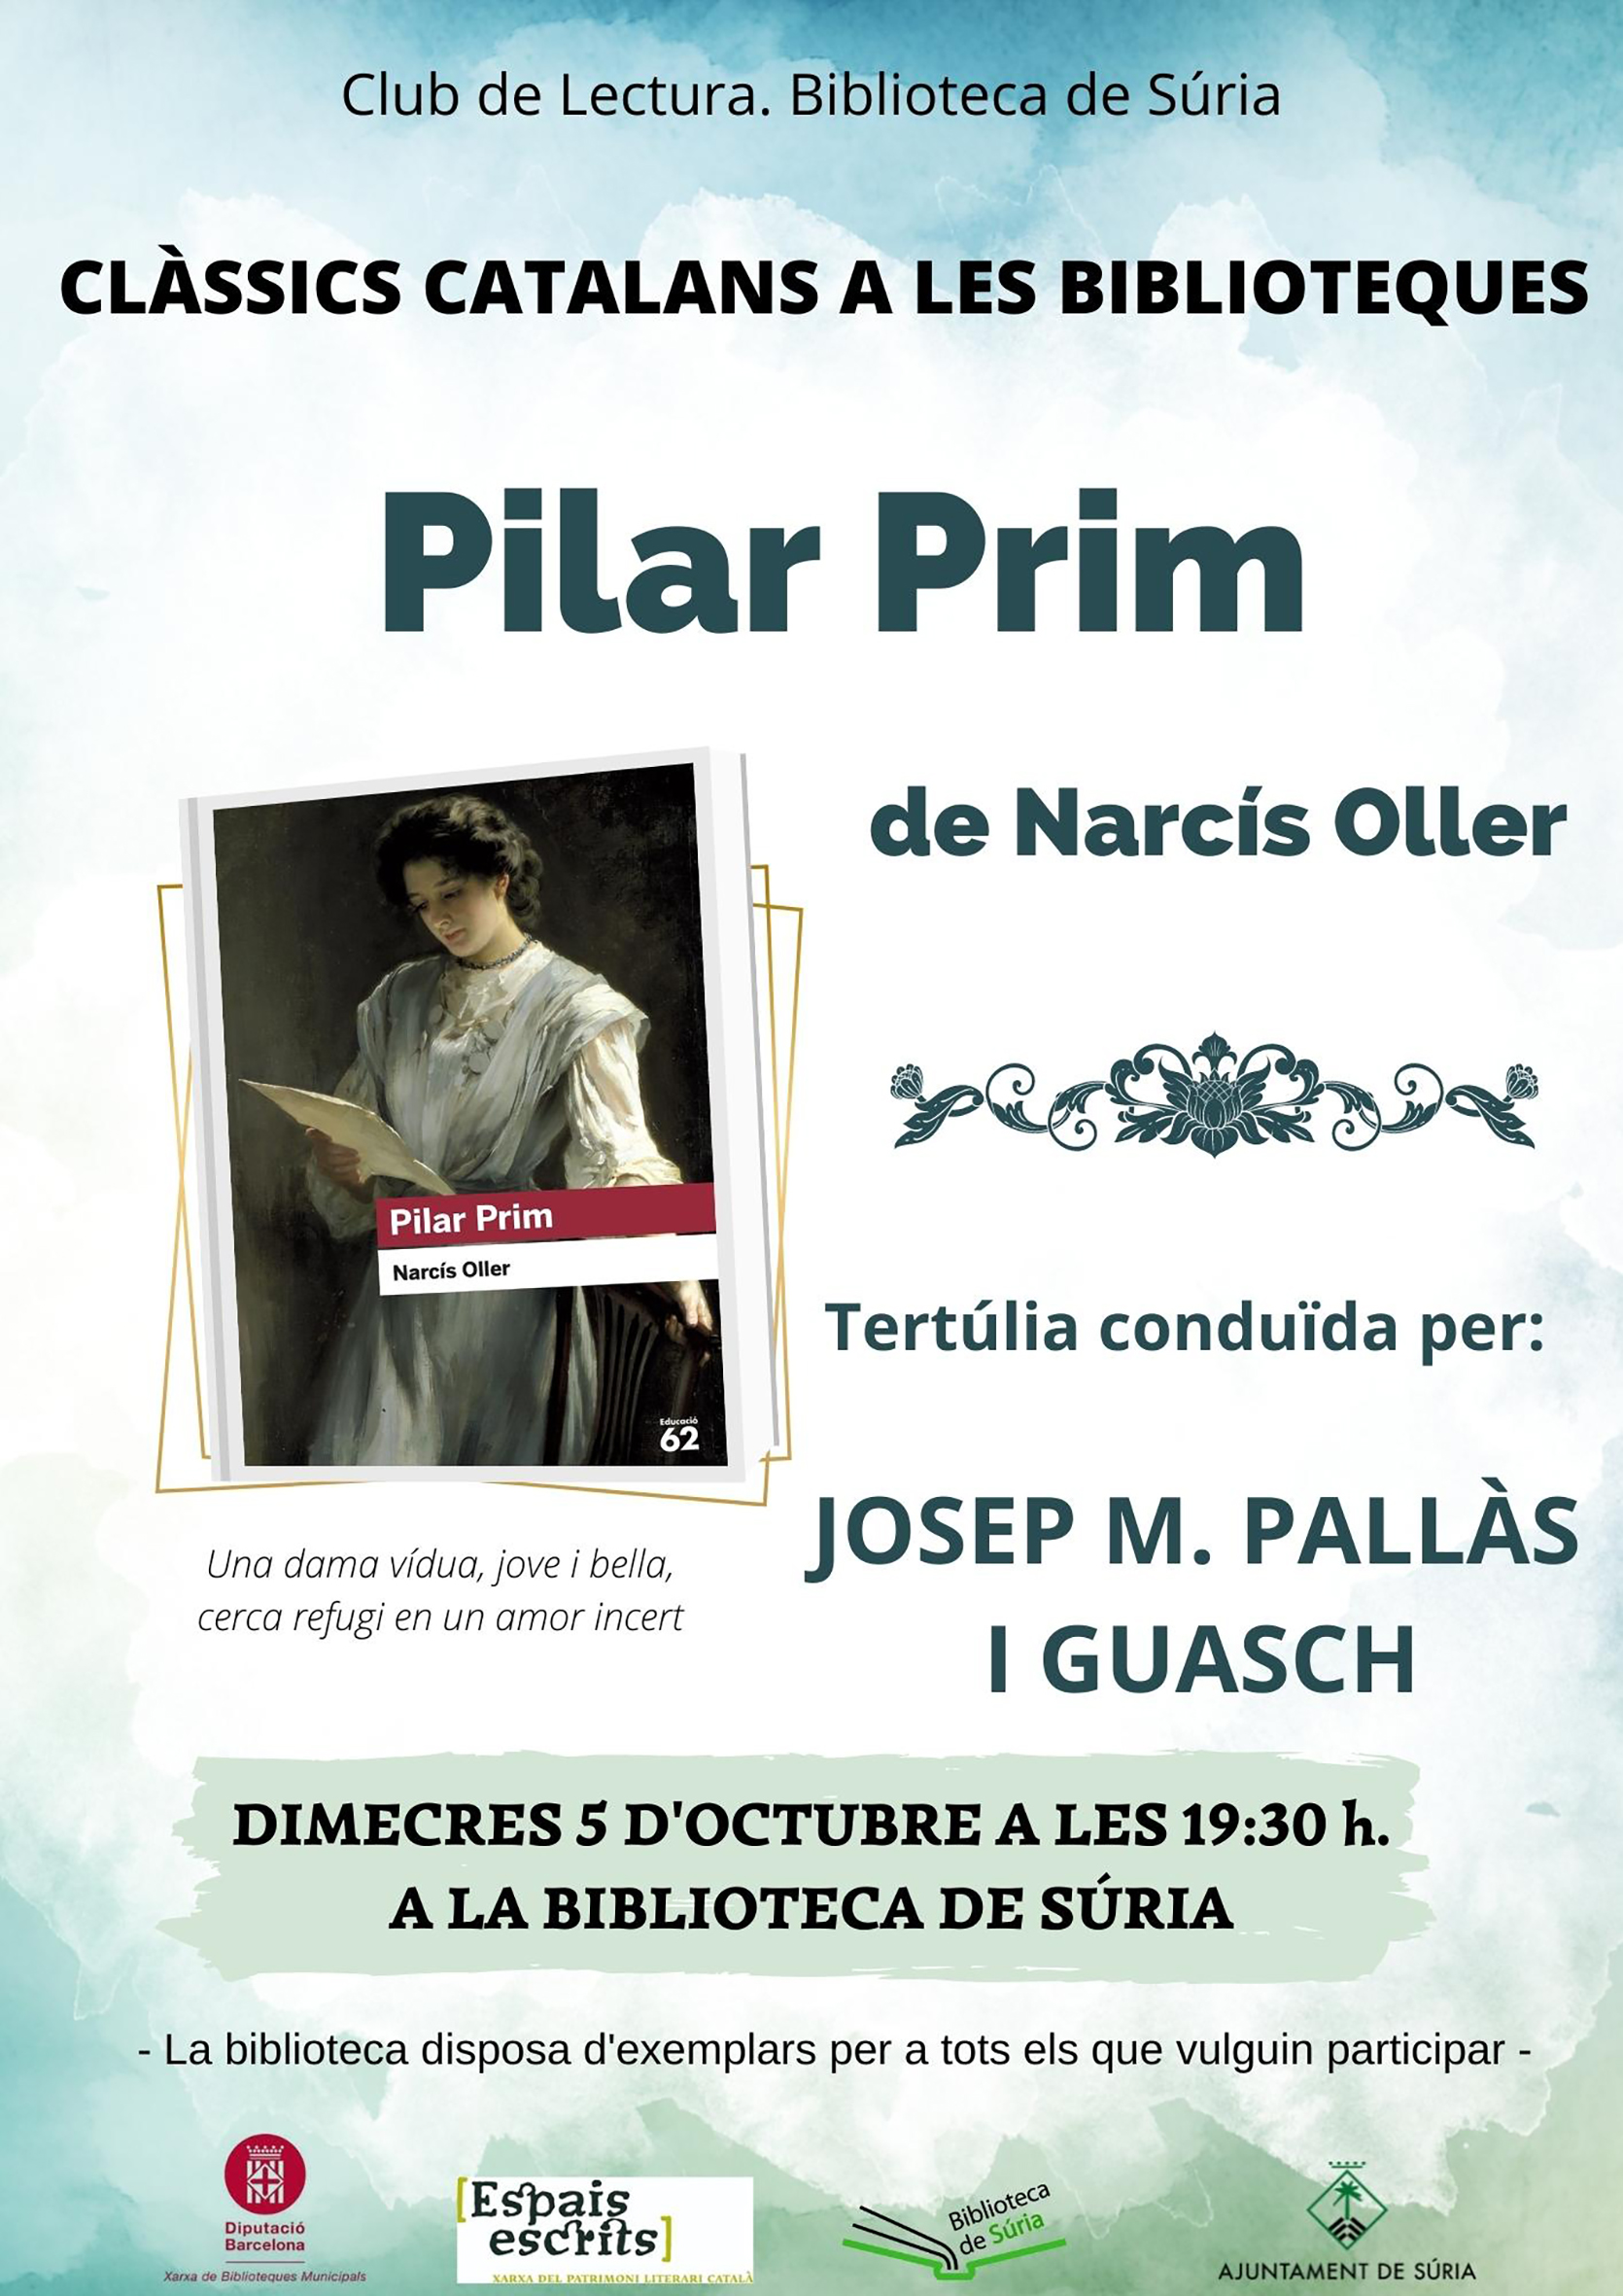 Cartell sobre la sessió del Club de Lectura de la Biblioteca Pública sobre la novel·la 'Pilar Prim' de Narcís Oller - Dimecres 5 d'octubre.